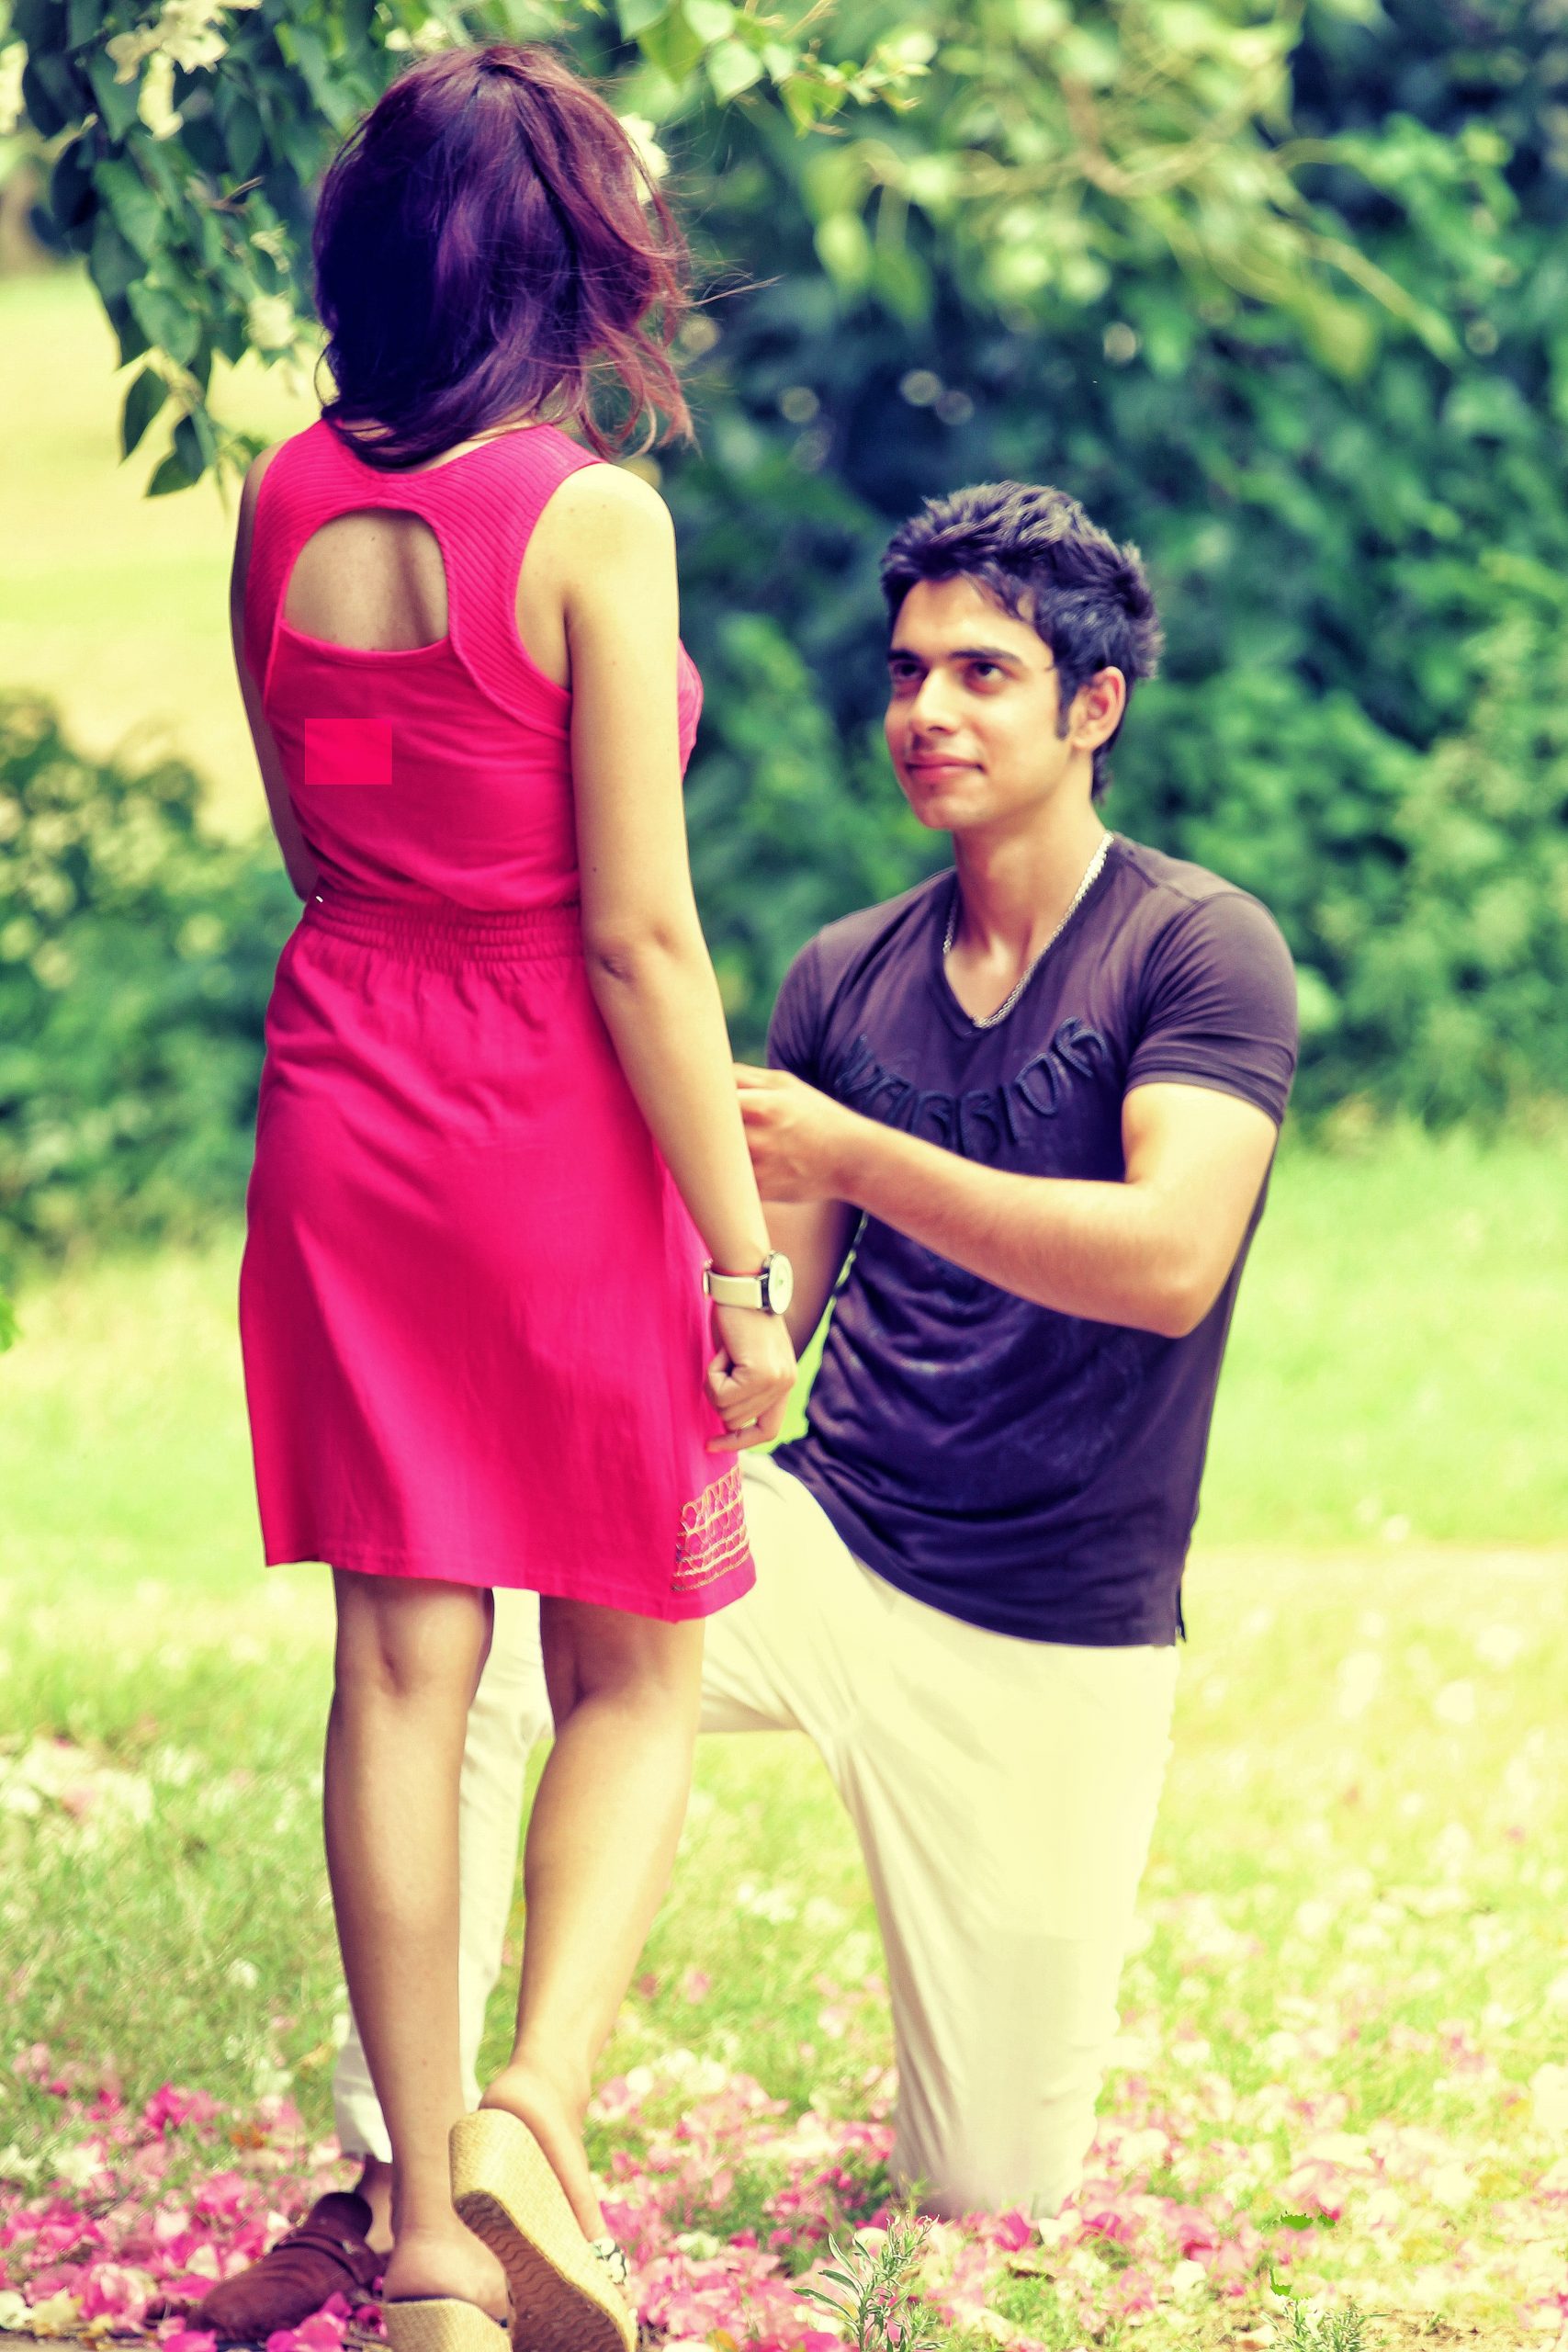 Boy proposing girl